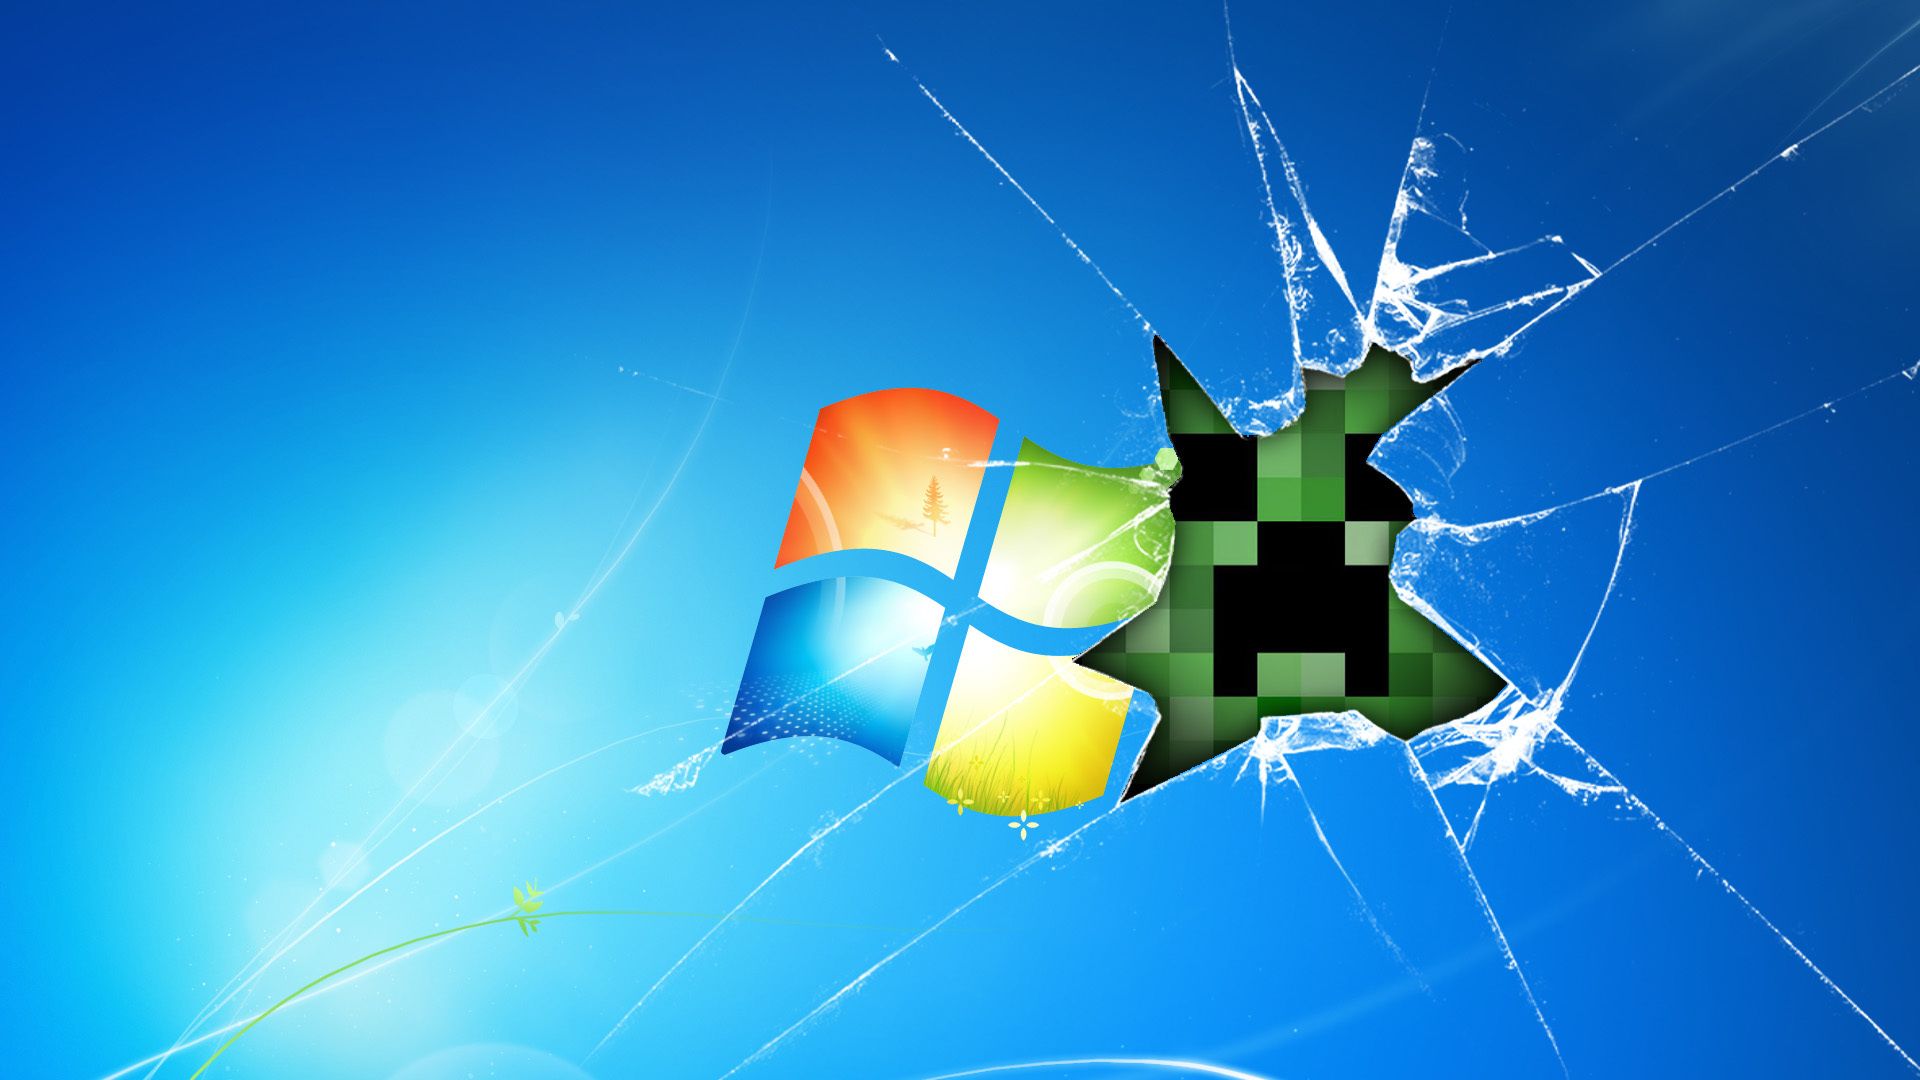 Windows Minecraft Game Wallpaper4u